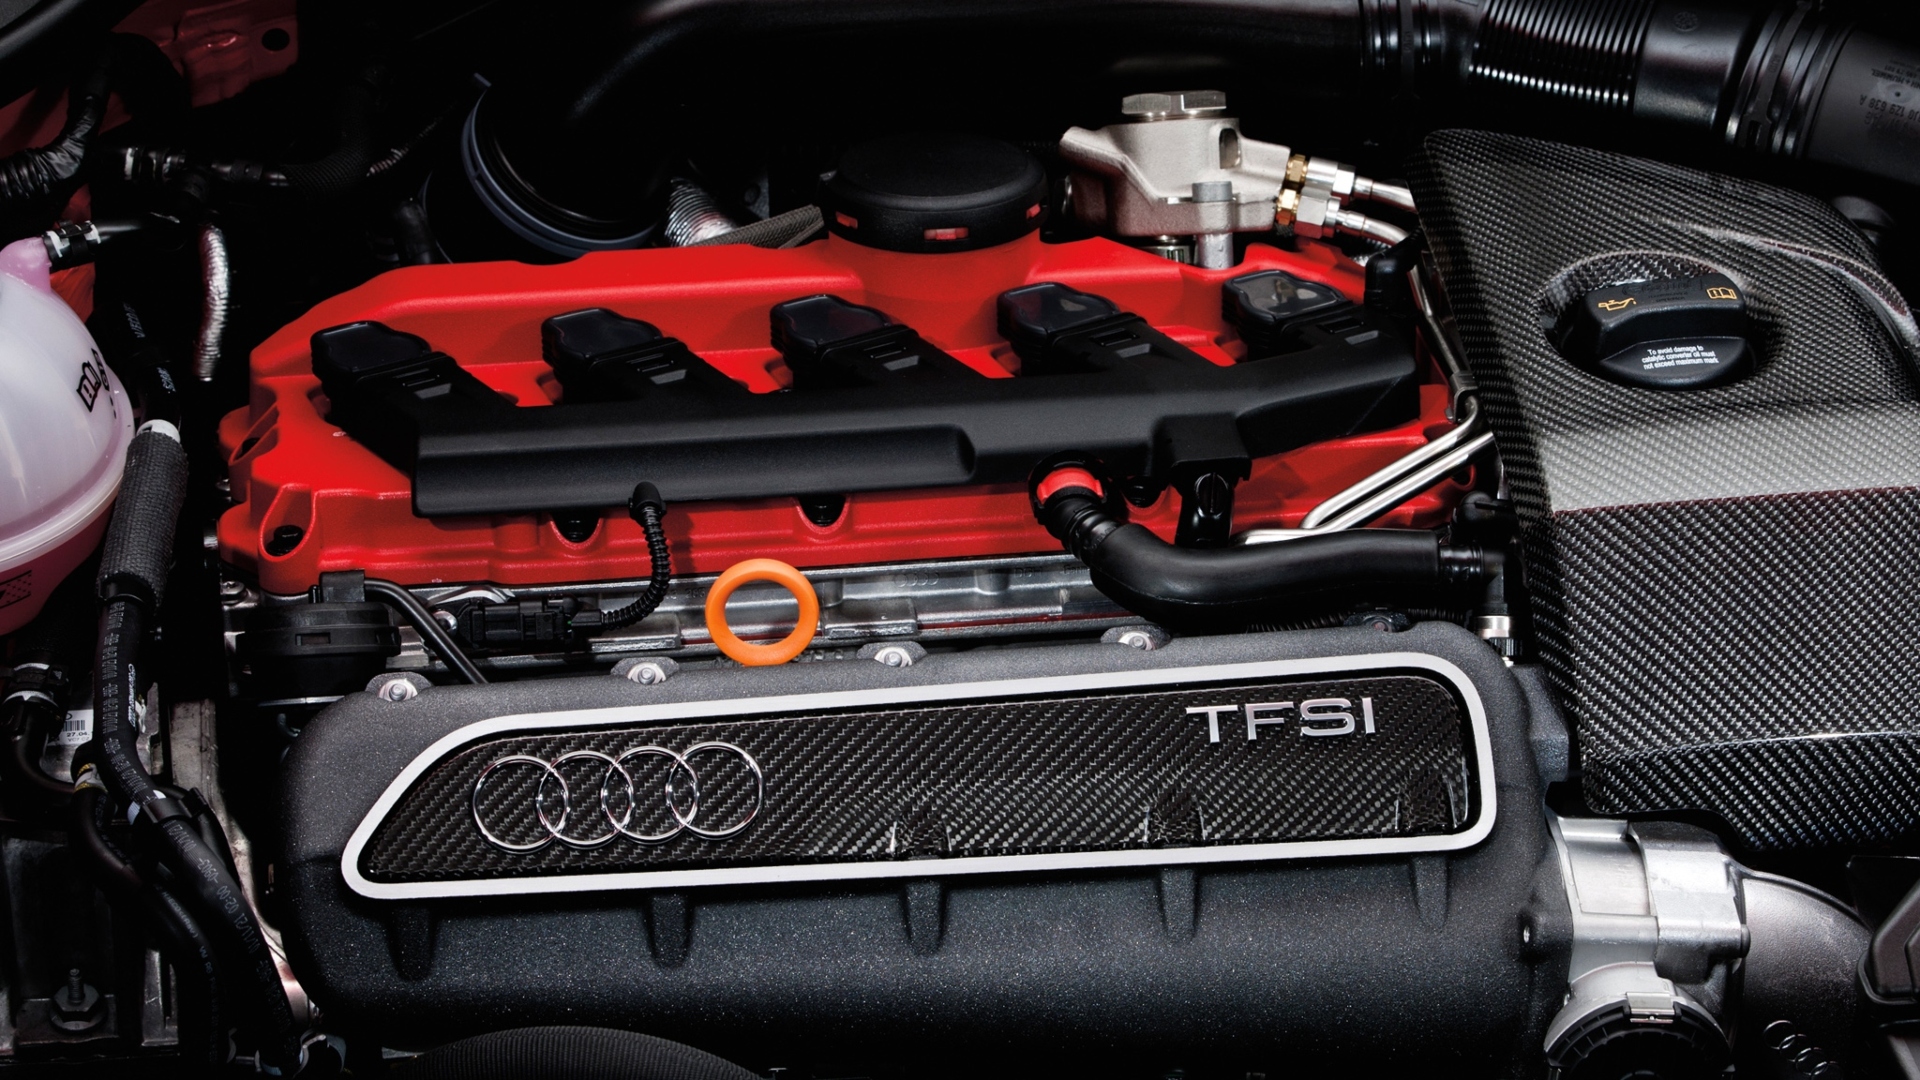 Audi 2.5 TFSI, i segreti di un 5 cilindri da favola